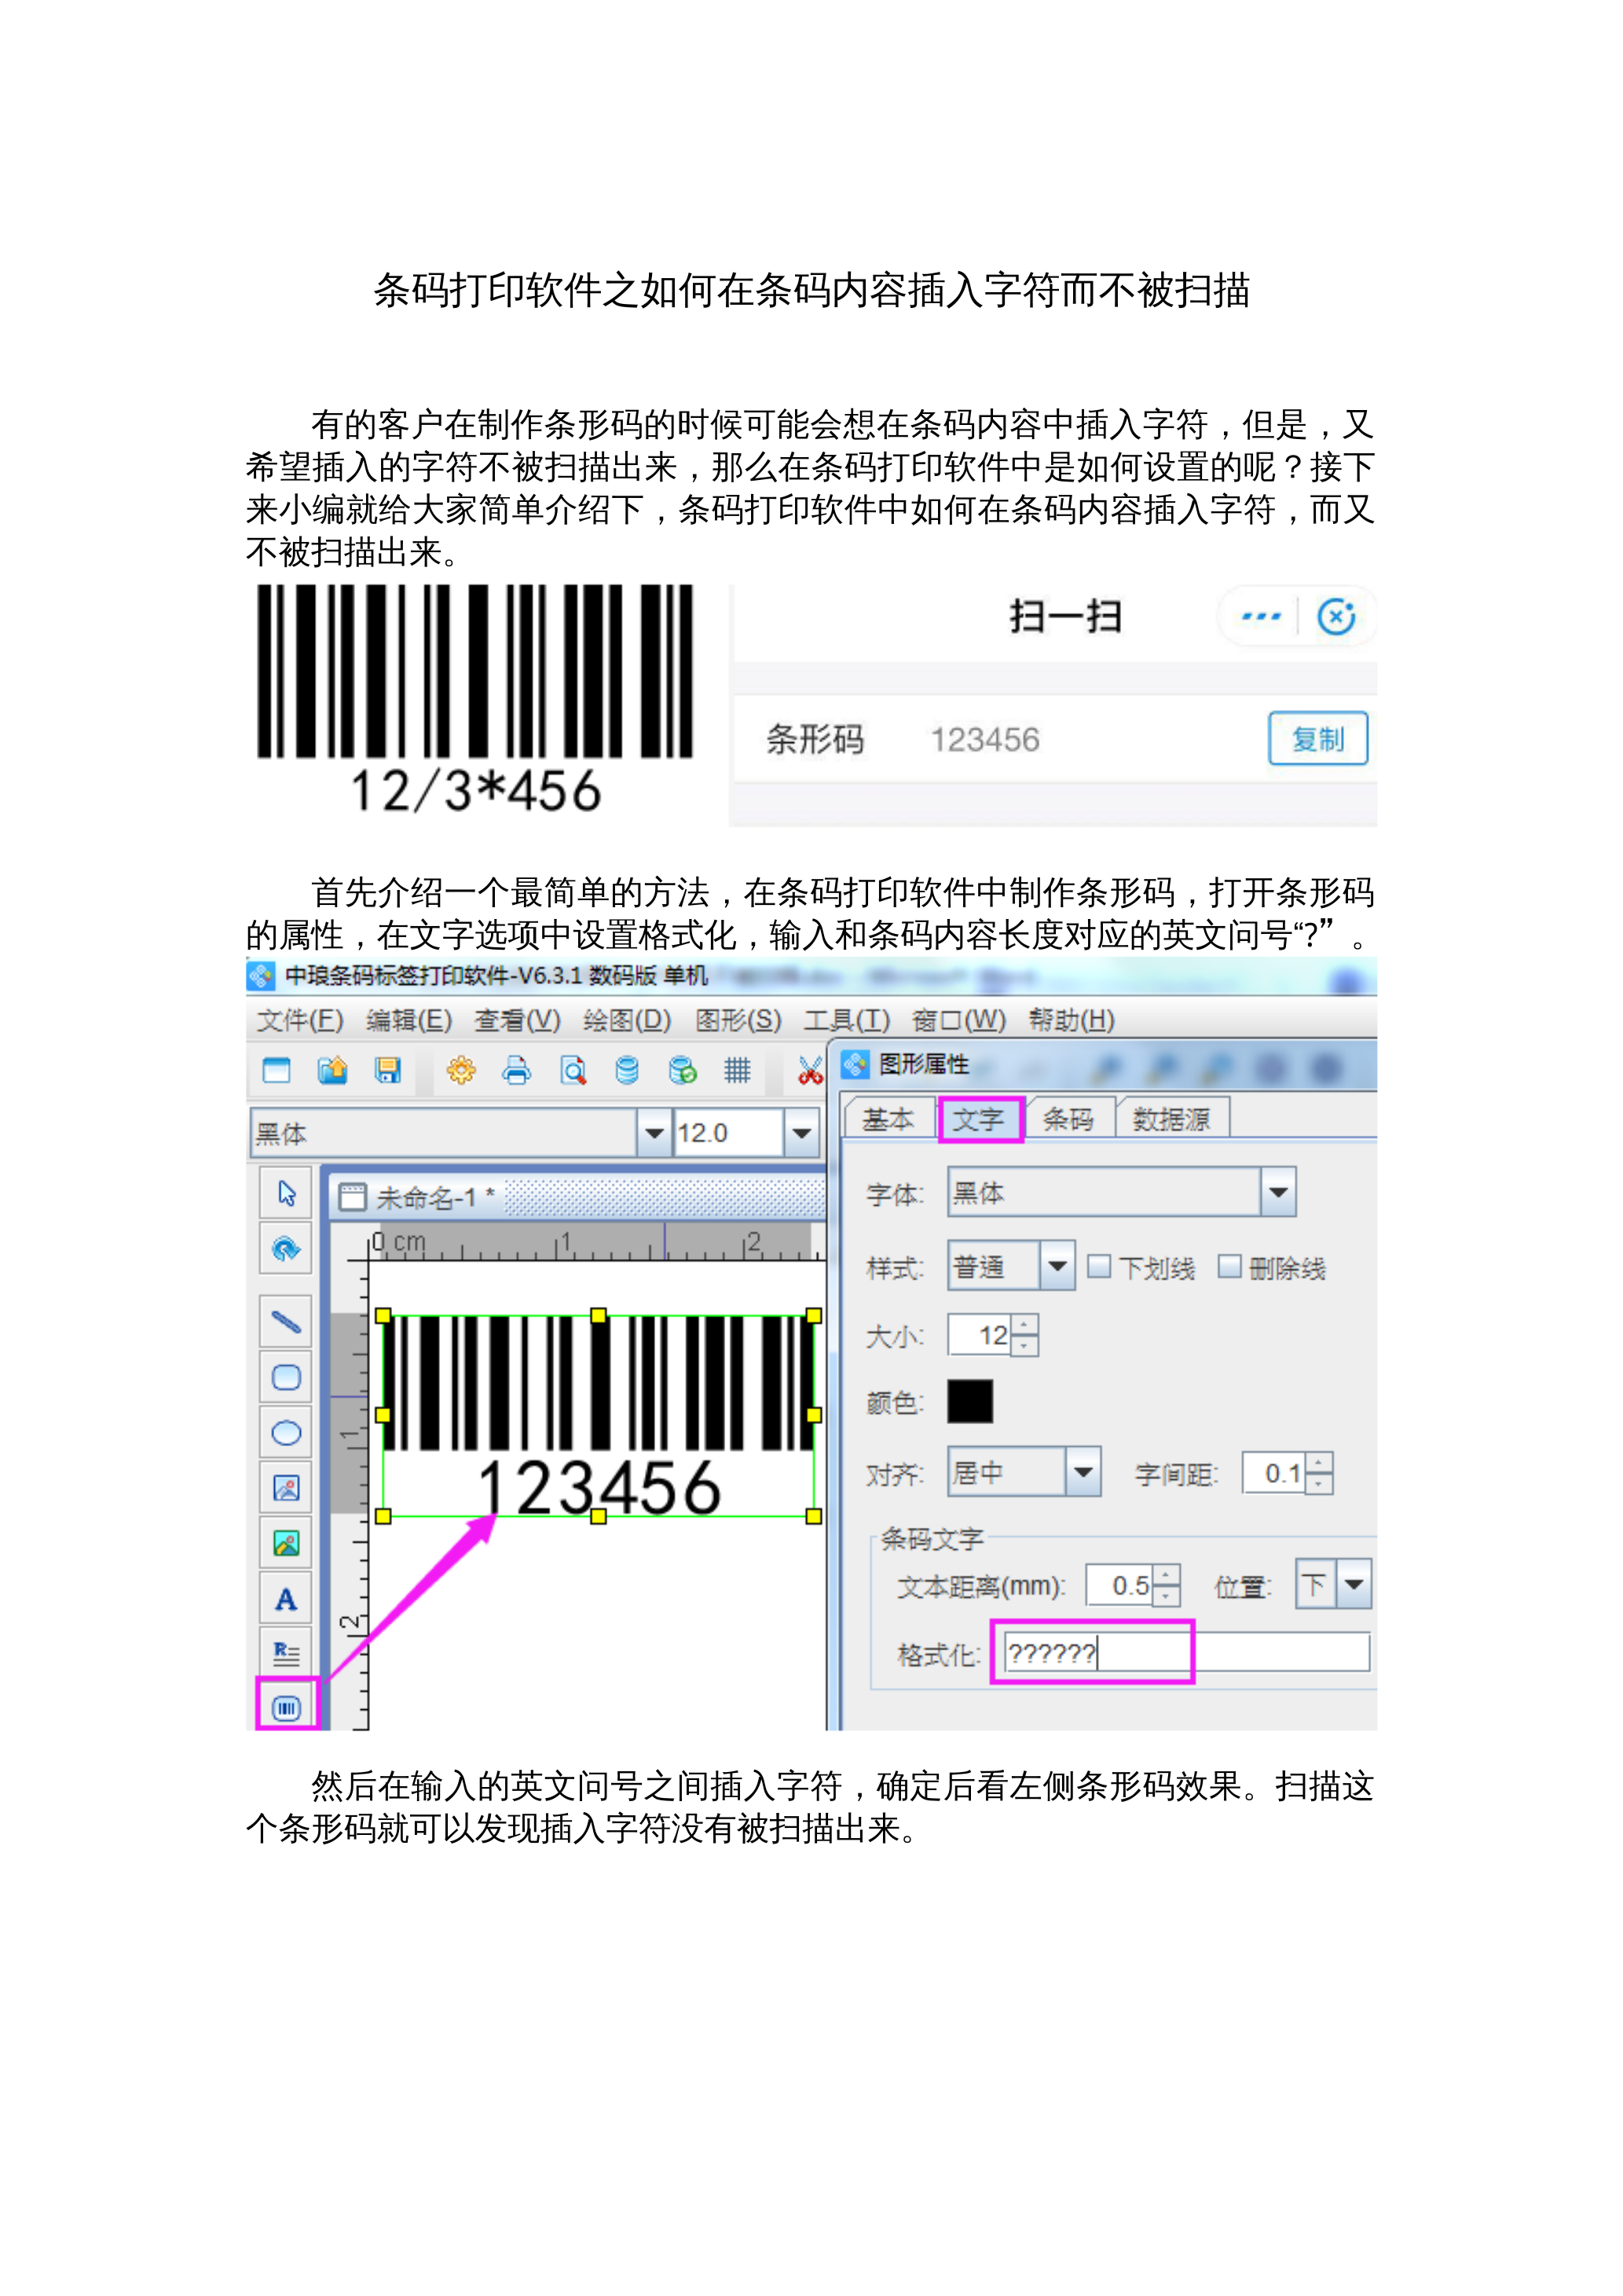 条码打印软件之如何在条码内容中插入字符而不被扫描 封面